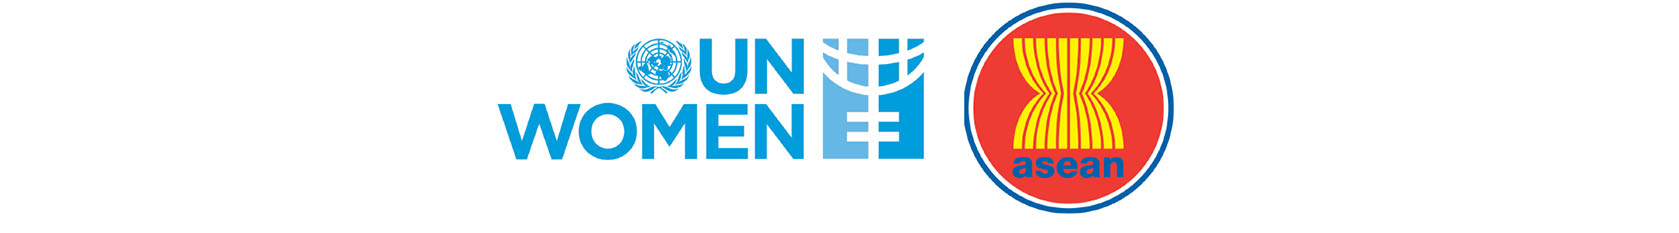 UN Women & ASEAN logos